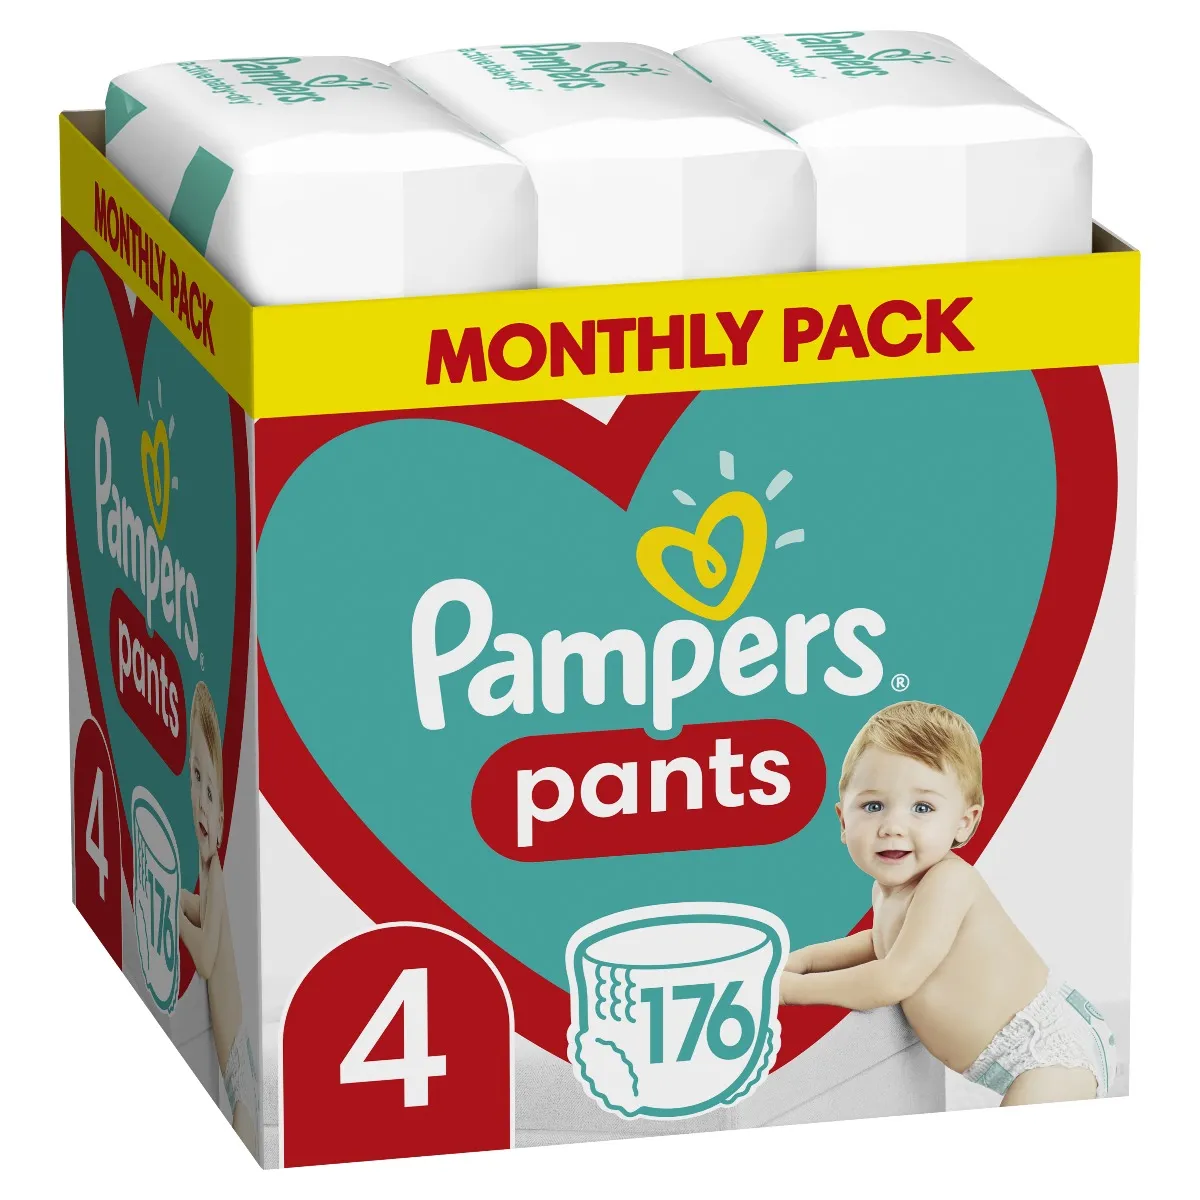 Pampers Pants vel. 4 Monthly Pack 9-15 kg plenkové kalhotky 176 ks